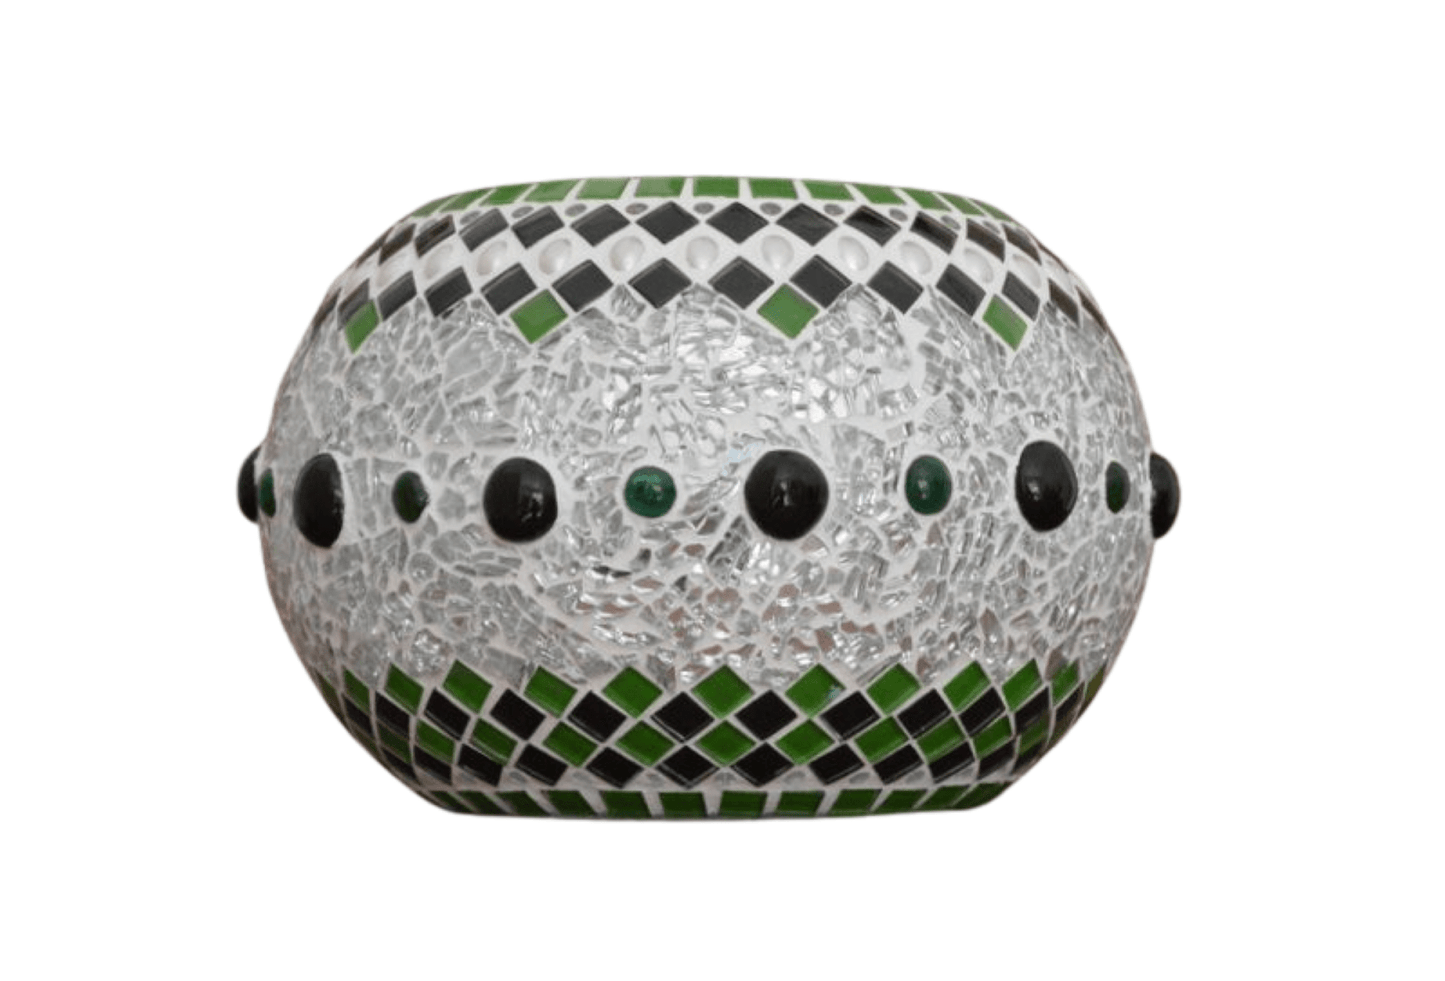 Mosaik Windlicht Kugel grün schwarz silber in versch. Größen - Mosaikkasten aus alt mach neu dekoidee